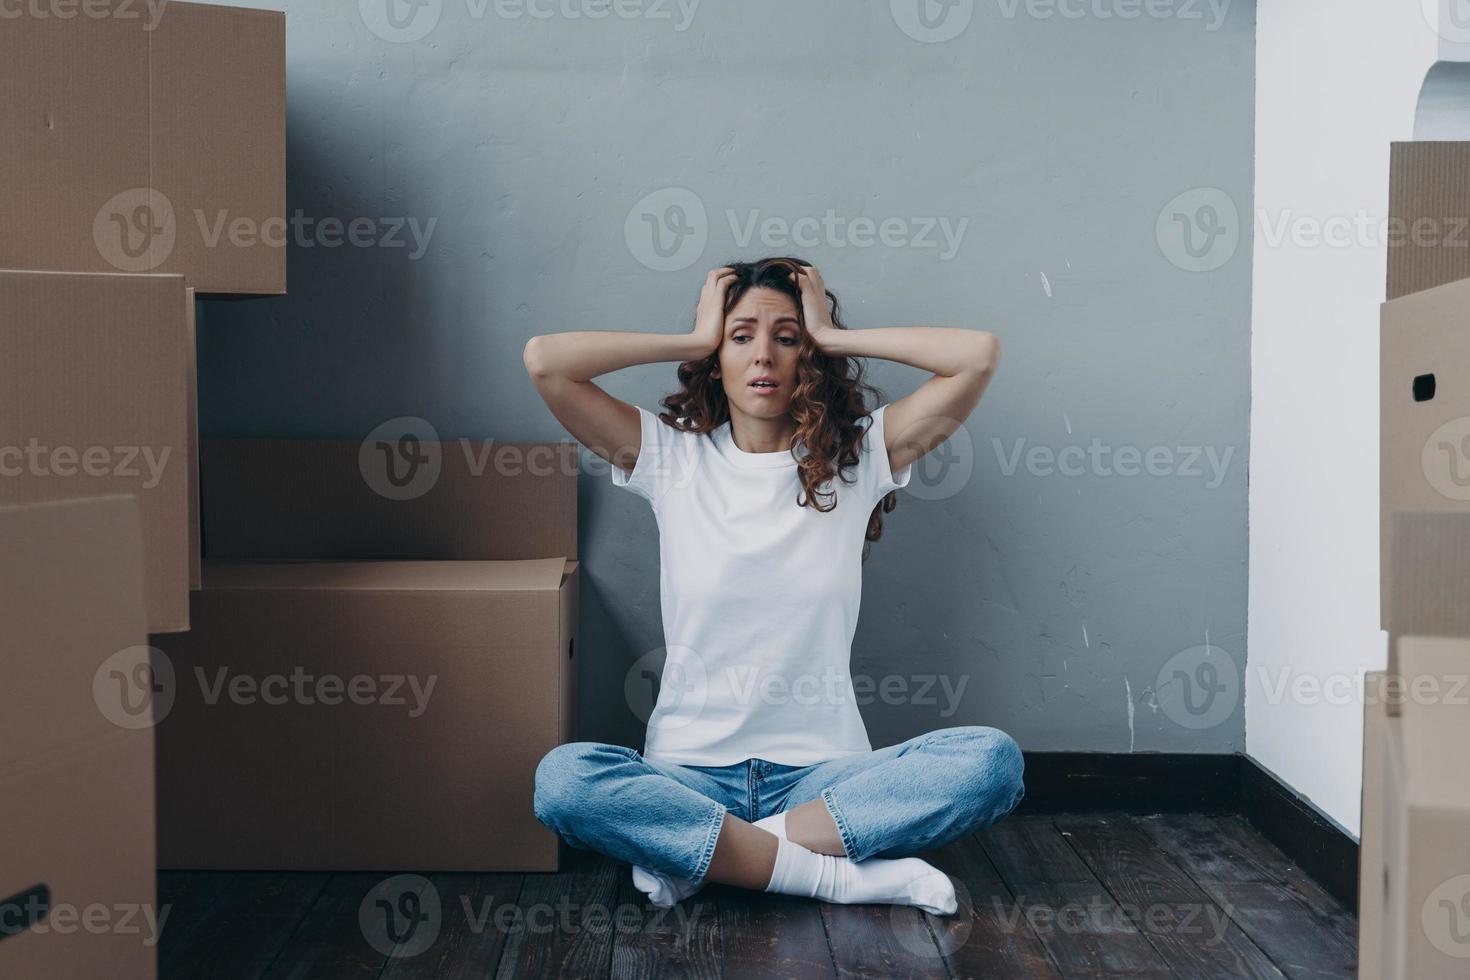 trött förbryllad ung kvinna är under påfrestning på grund av till hård omlokalisering dag. rör på sig företag reklam foto